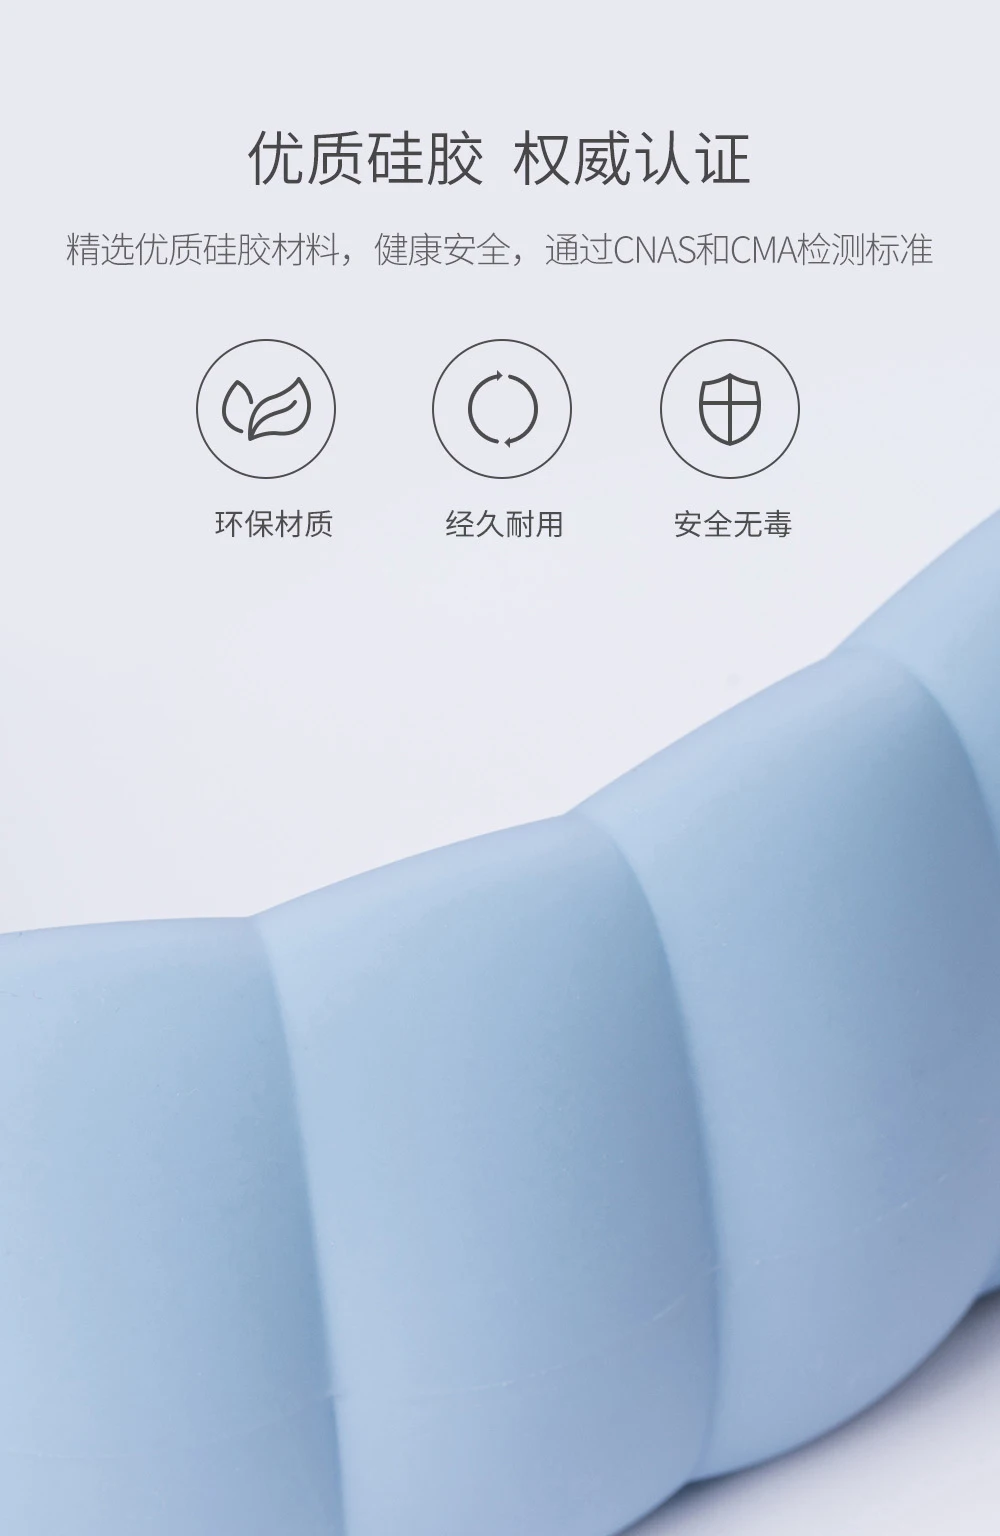 Xiaomi шейный нагревательный шарф, грелка, наплечная Шейная впрыска воды, u-образная бутылка для воды, Взрывозащищенная для умного дома